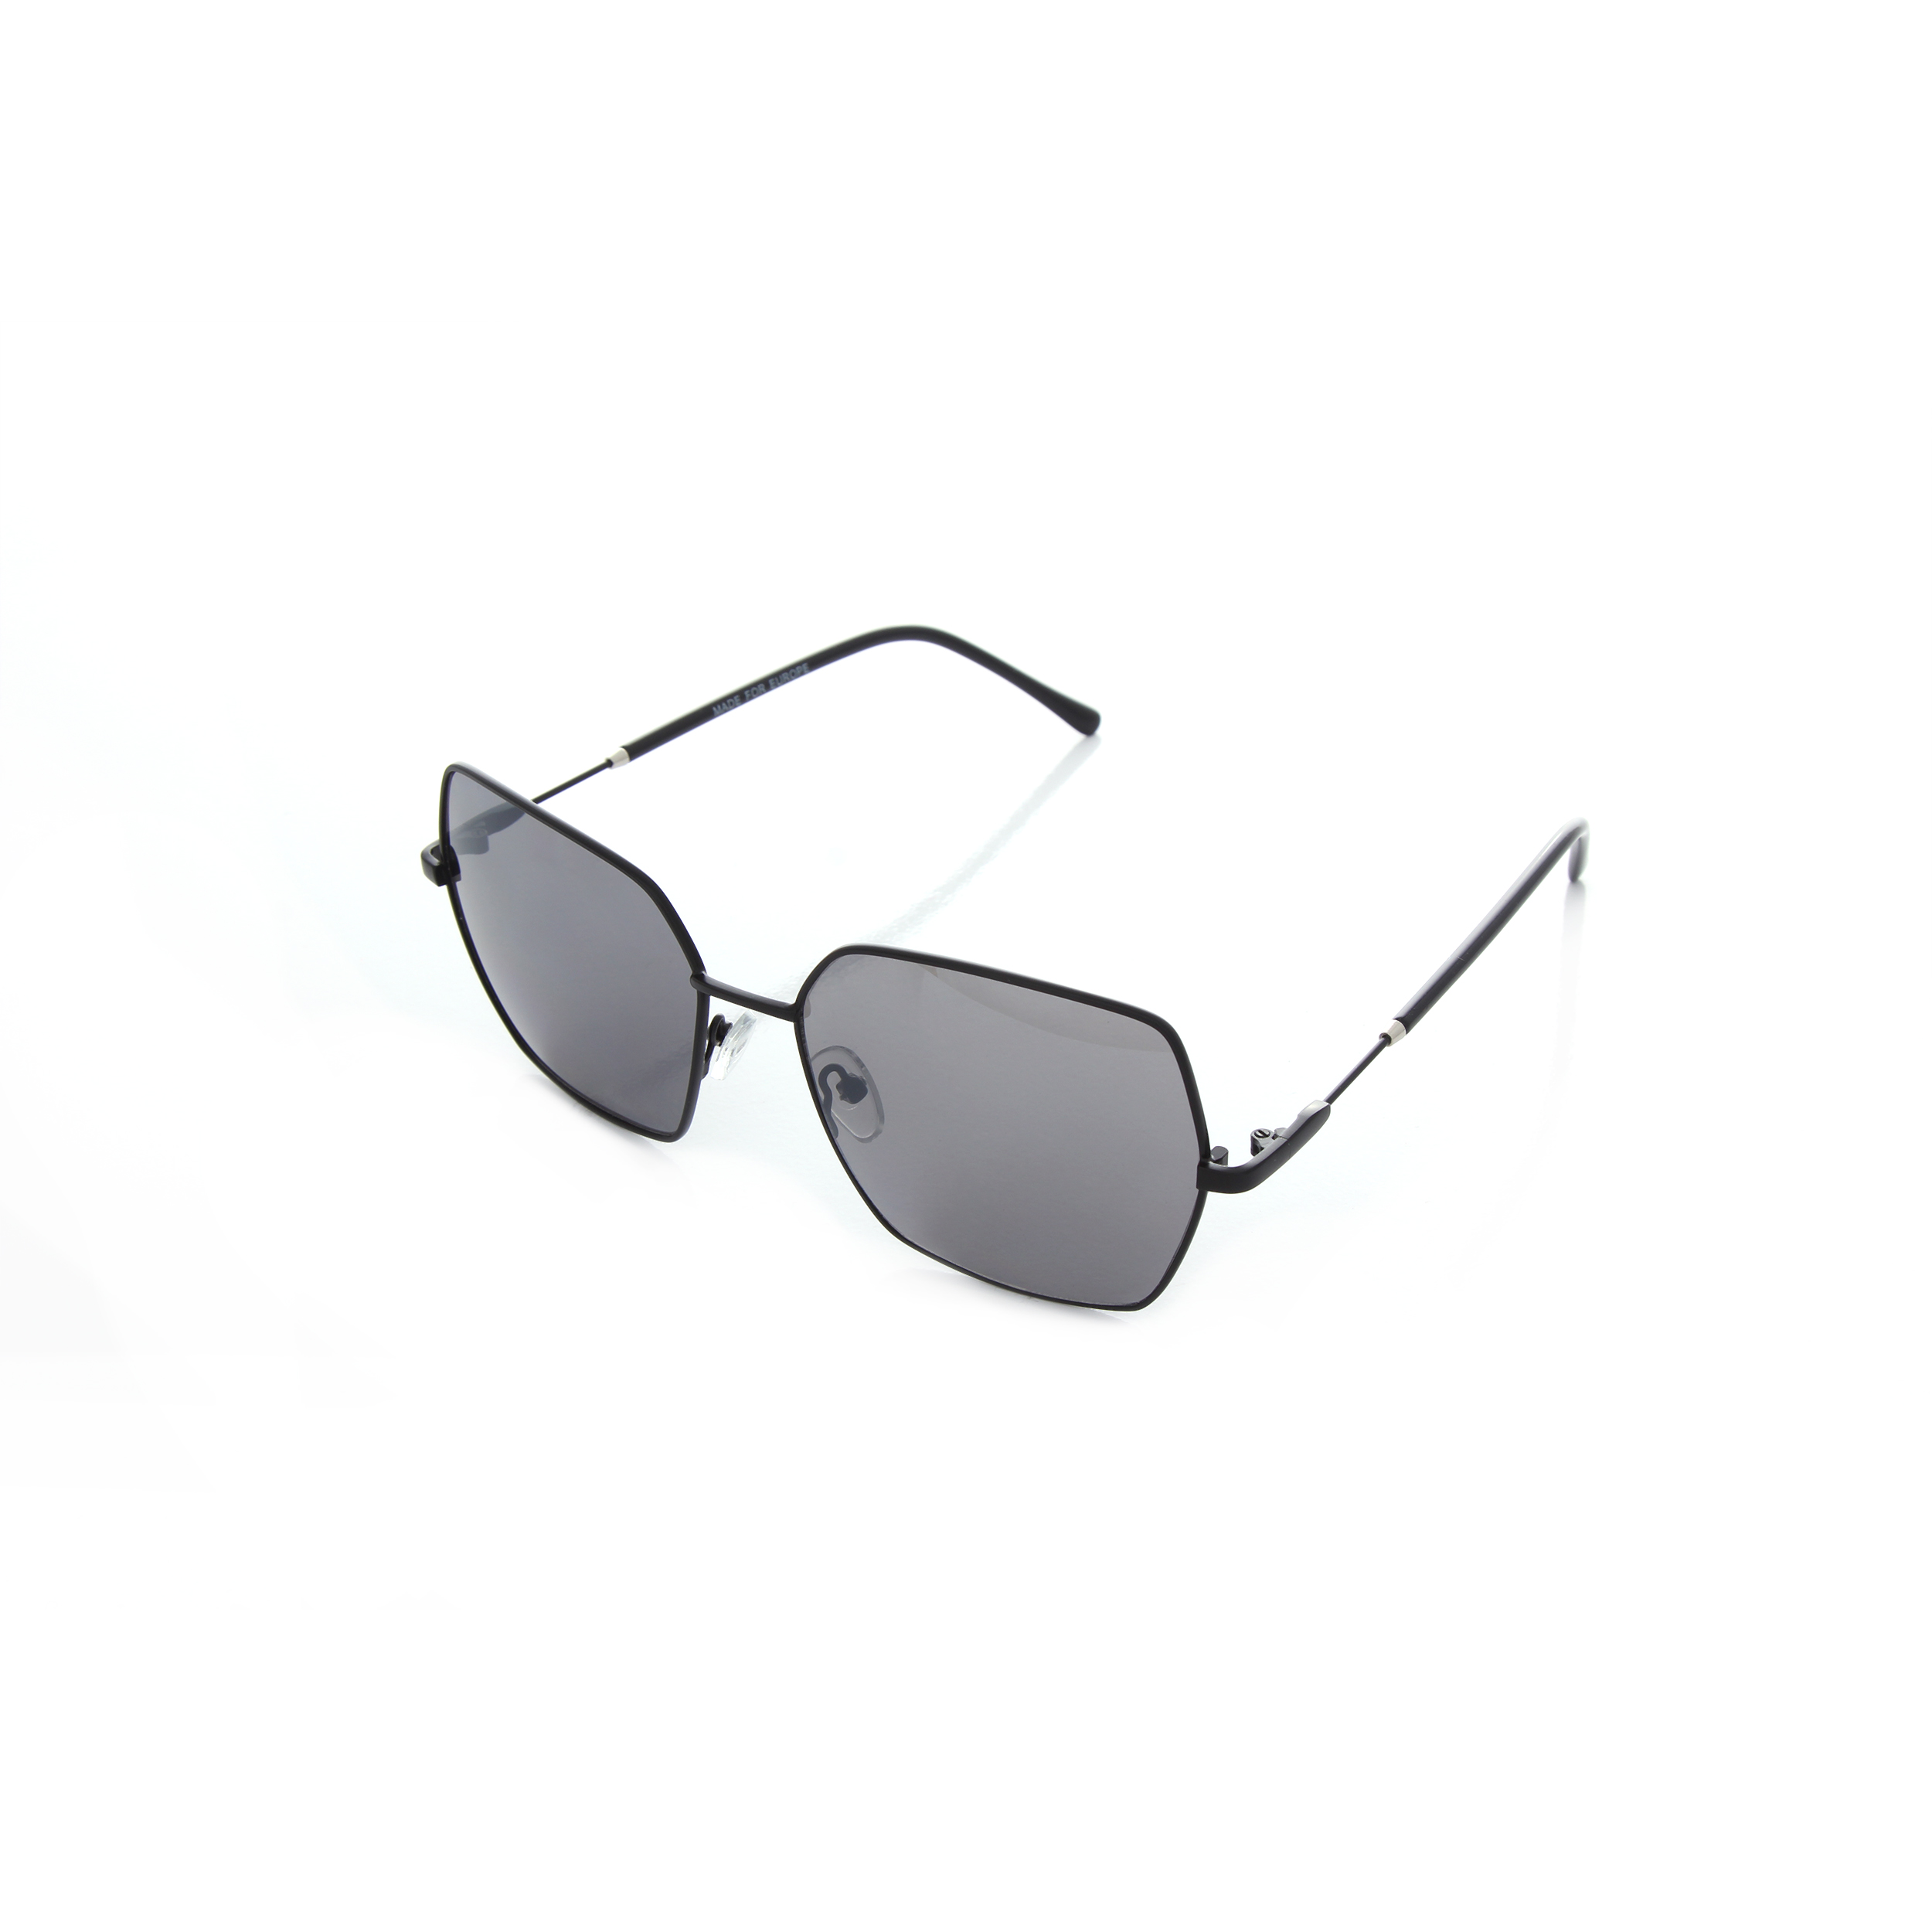 Солнцезащитные очки LuckyLOOK женские 393-296 Фэшн-Классика One Size Серый